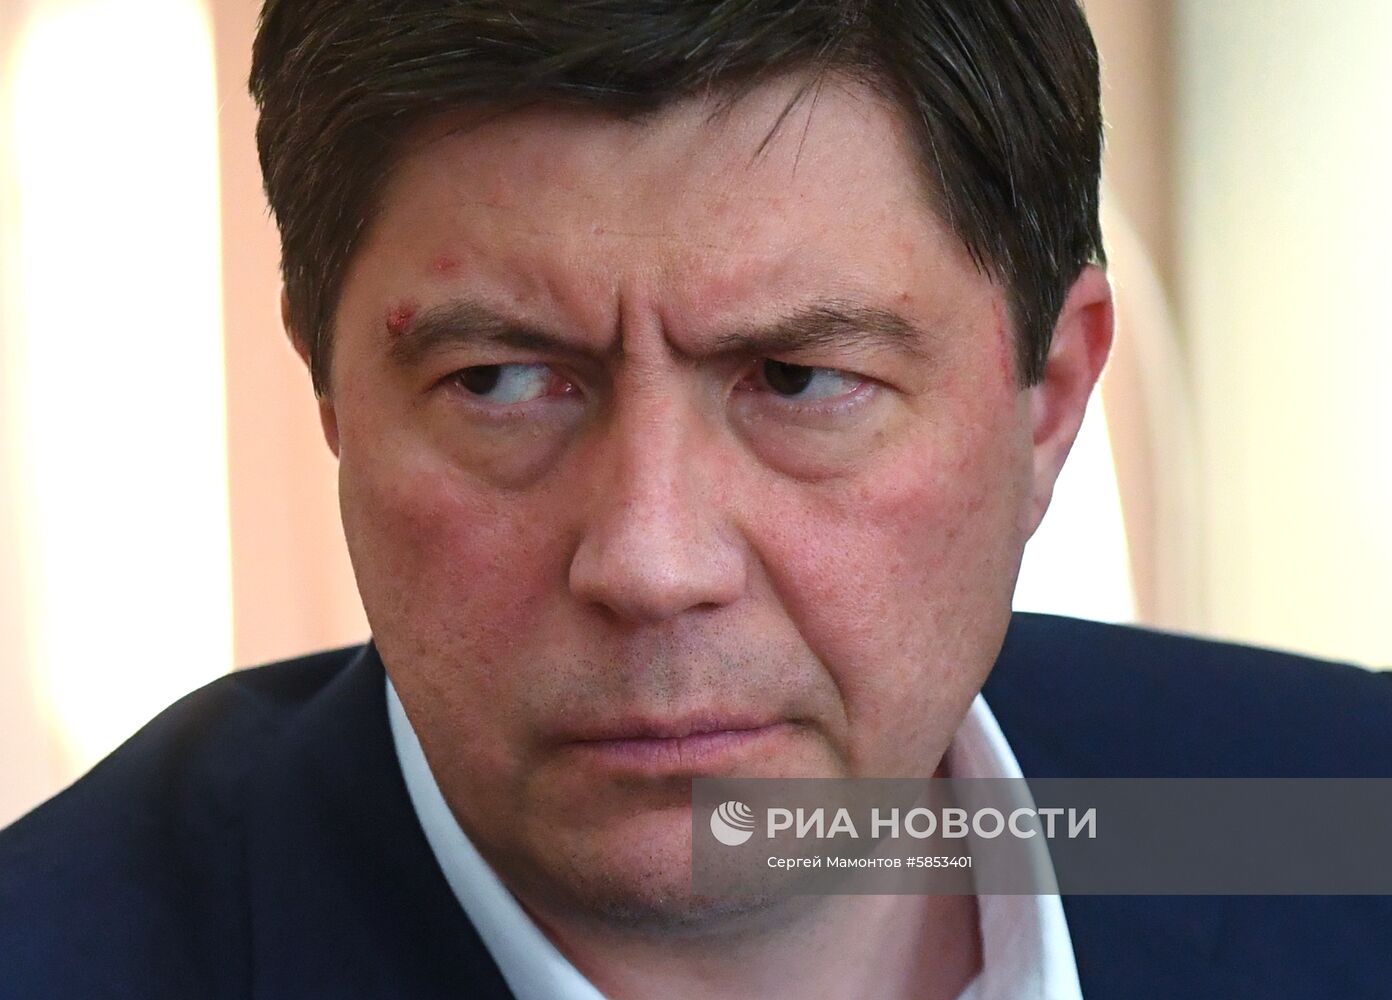 Избрание меры пресечения основному акционеру банка "Югра" А. Хотину